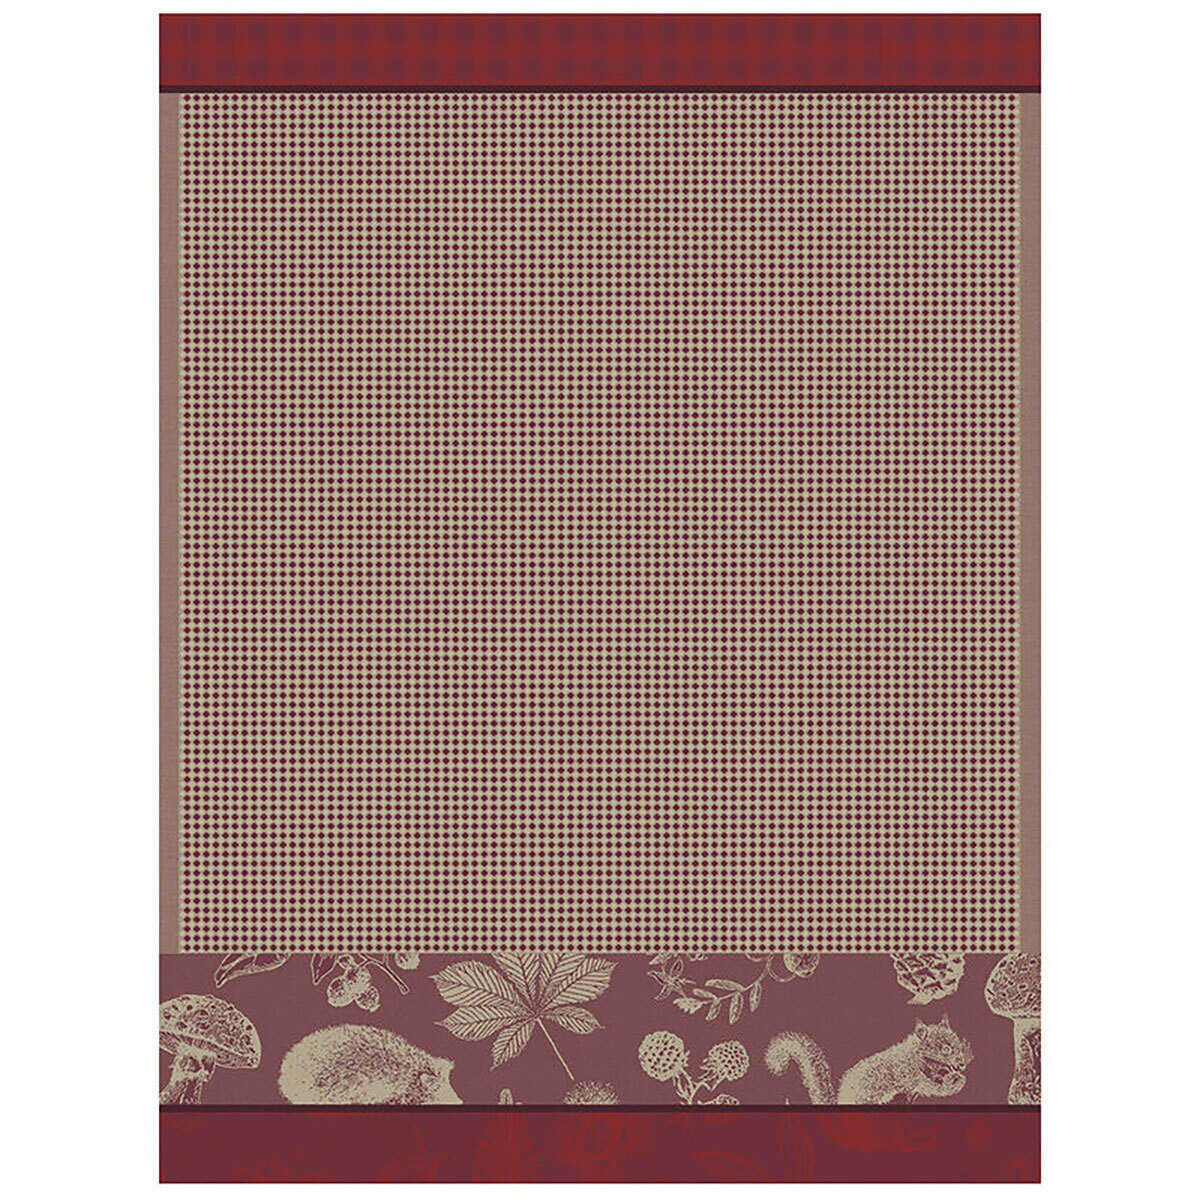 Le Jacquard Francais Hand Towel Dans Les Bois Red 100% Cotton 24 x 31 Inch 28125 Set of 4